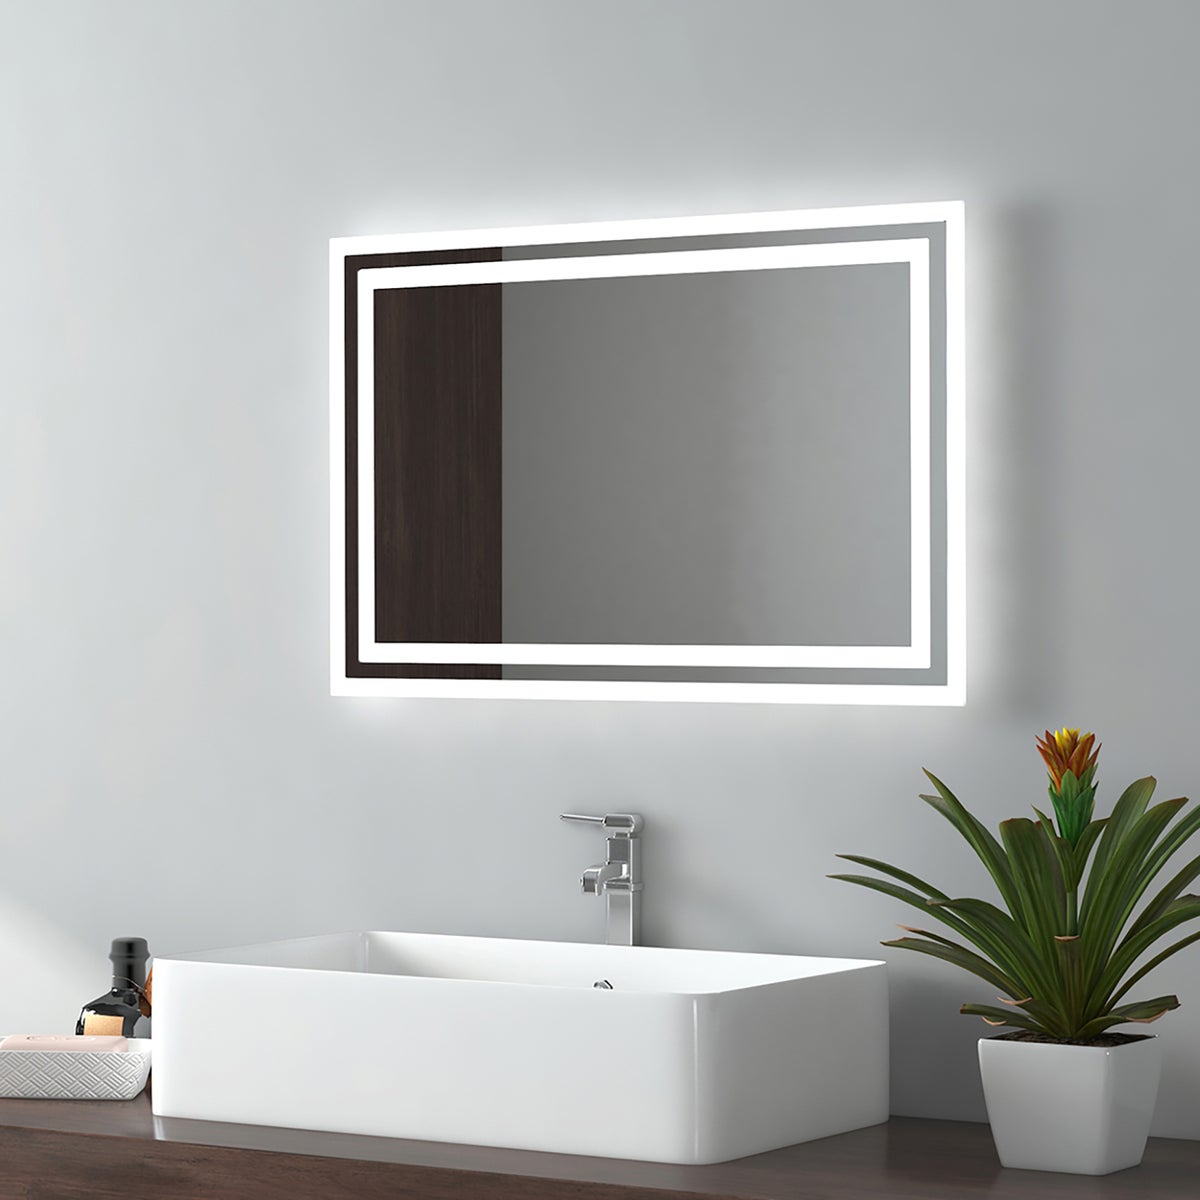 EMKE Badspiegel LED IP44 Wasserdicht Wandspiegel, 60x40cm, Kaltweißes/Warmweißes Licht, Knopfschalter, Beschlagfrei